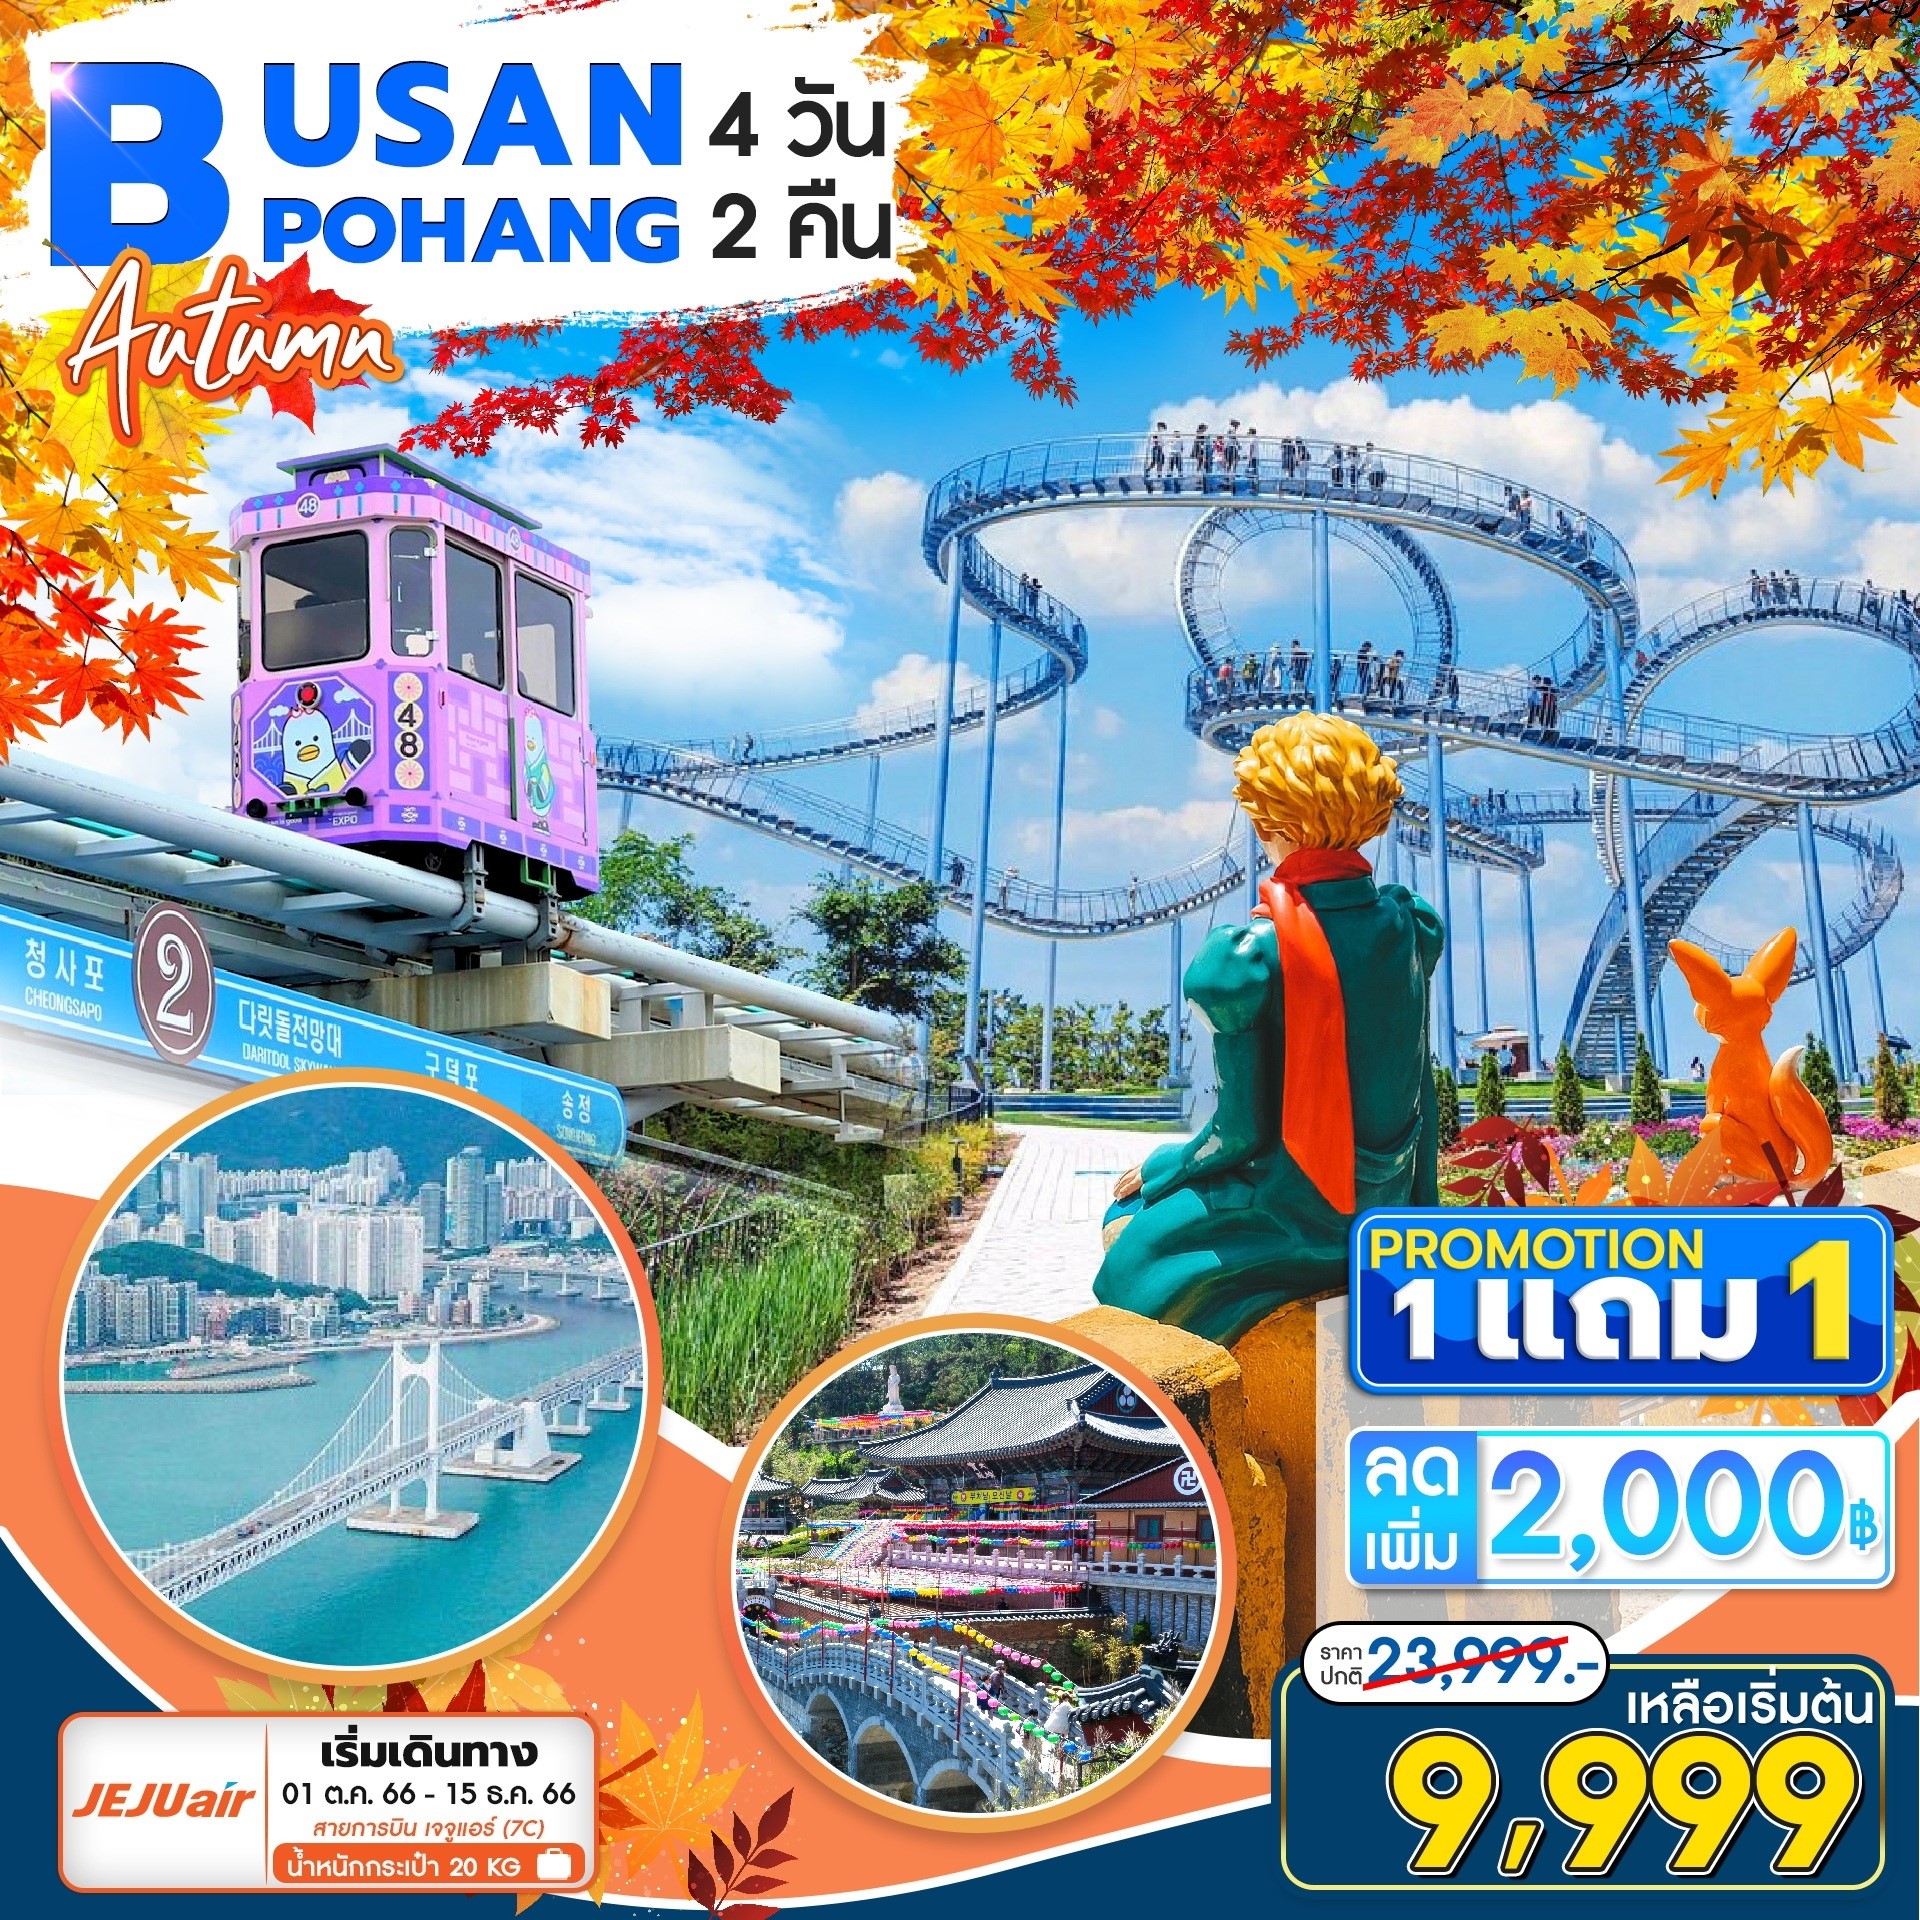 BUS01.04---Busan Pohang4D2N ปูซาน-โพฮัง